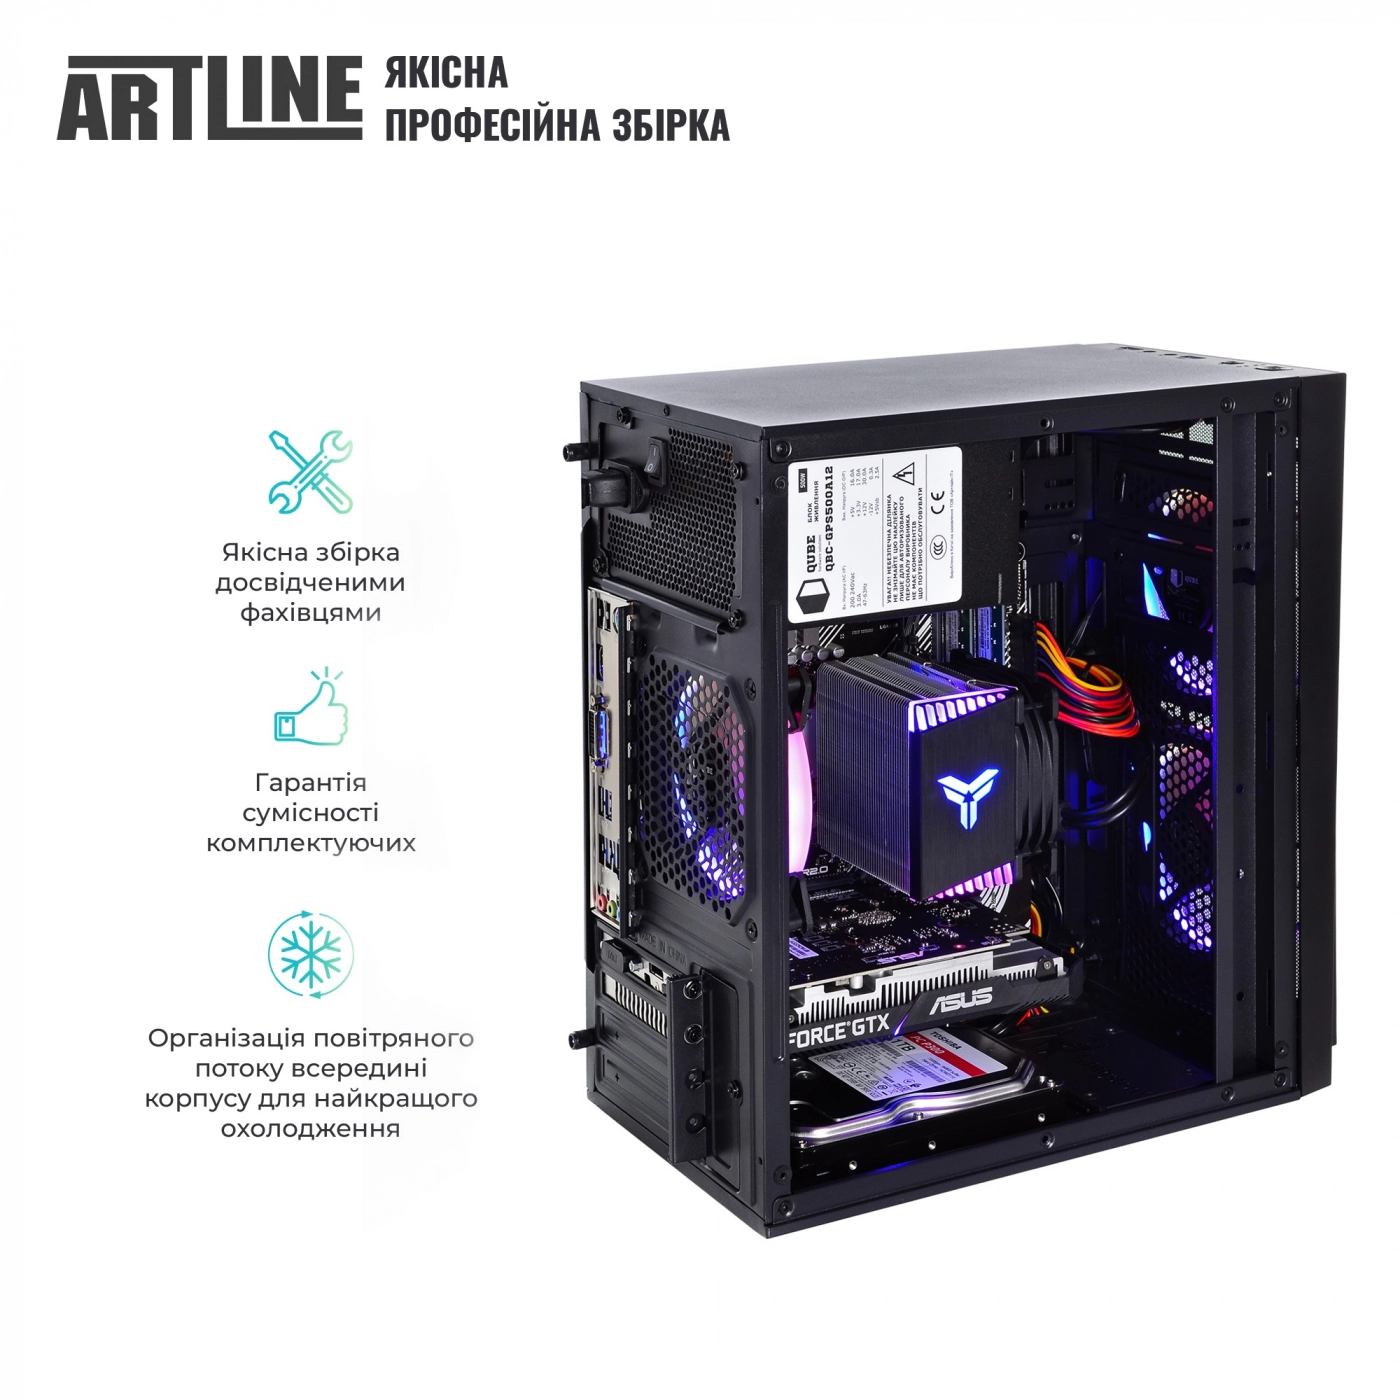 Купить Компьютер ARTLINE Gaming X43v23 - фото 5